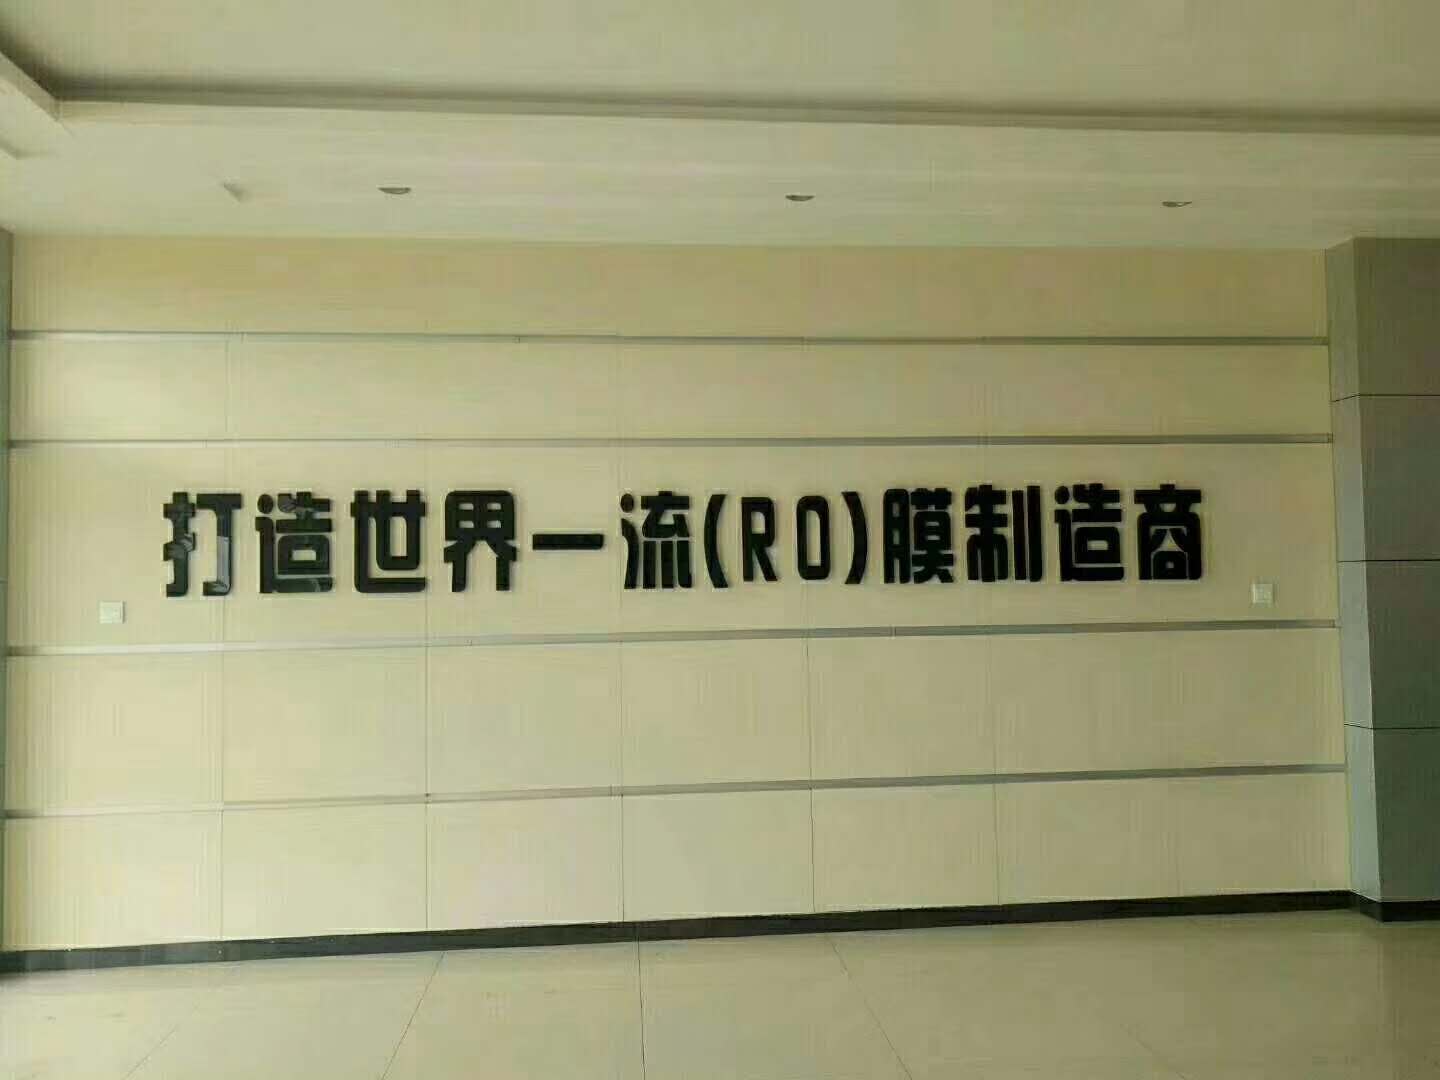 上海瓷易环保设备有限公司